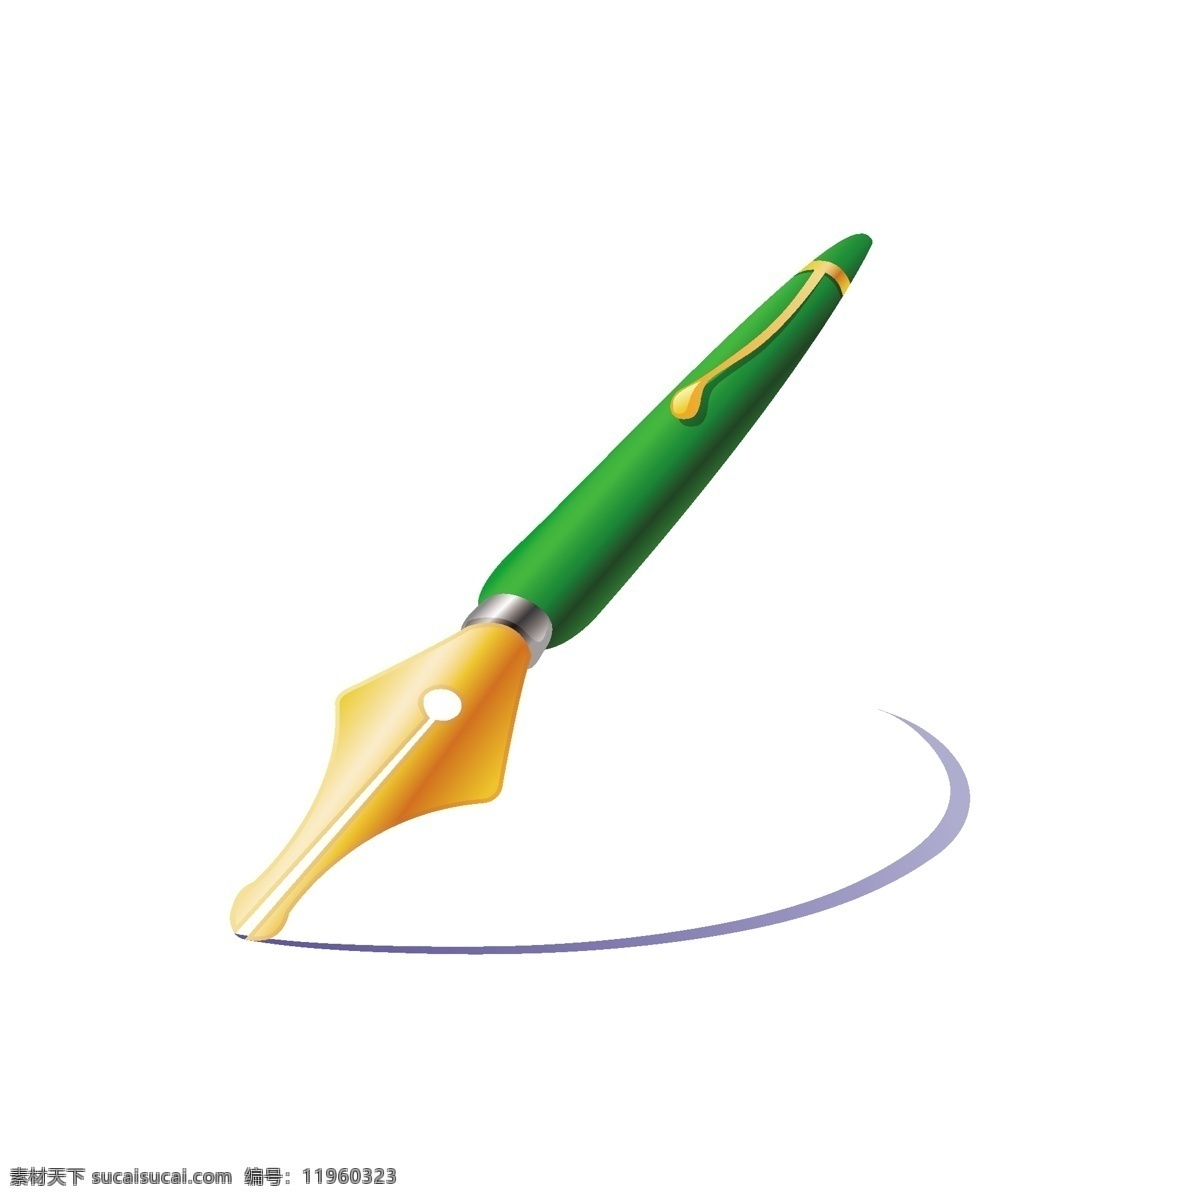 画笔 美术 美术绘画 其他矢量 色彩 矢量素材 文化艺术 金色 钢笔 矢量 模板下载 金色钢笔 画笔设计素材 画笔模板下载 美术画笔 油画 颜料 矢量图 其他矢量图